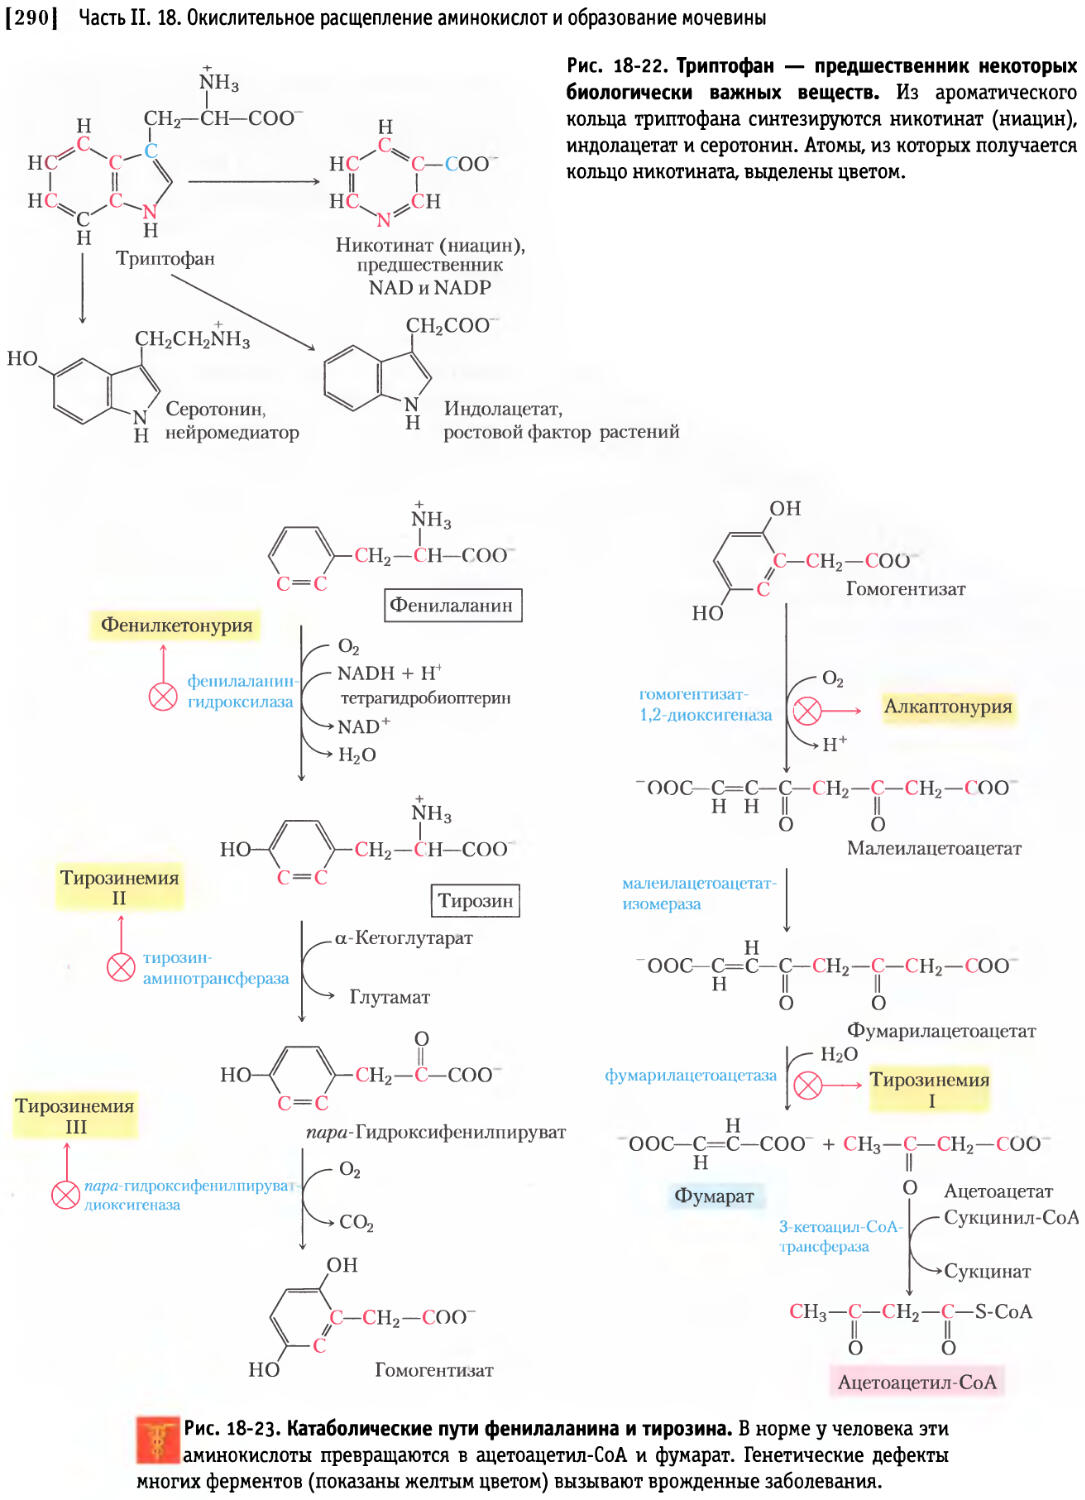 Фенилаланин биохимия. Схема альтернативного пути превращения фенилаланина. Схема катаболизма фенилаланина. Альтернативный путь катаболизма фенилаланина. Схема катаболизма тирозина в печени.